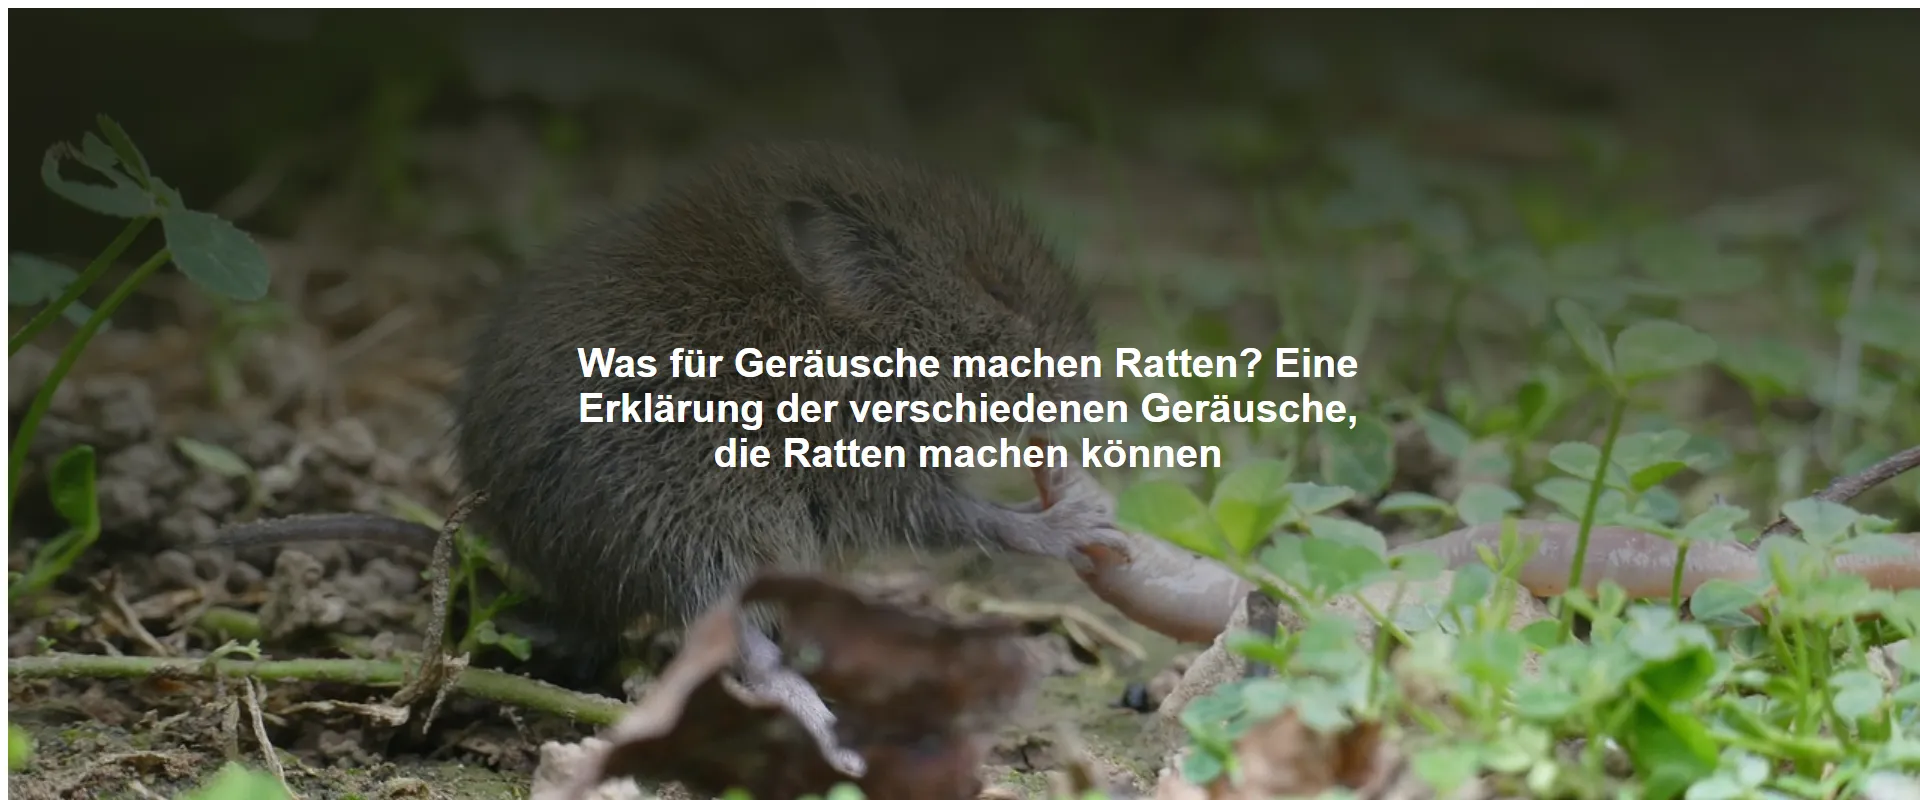 Was für Geräusche machen Ratten? Eine Erklärung der verschiedenen Geräusche, die Ratten machen können